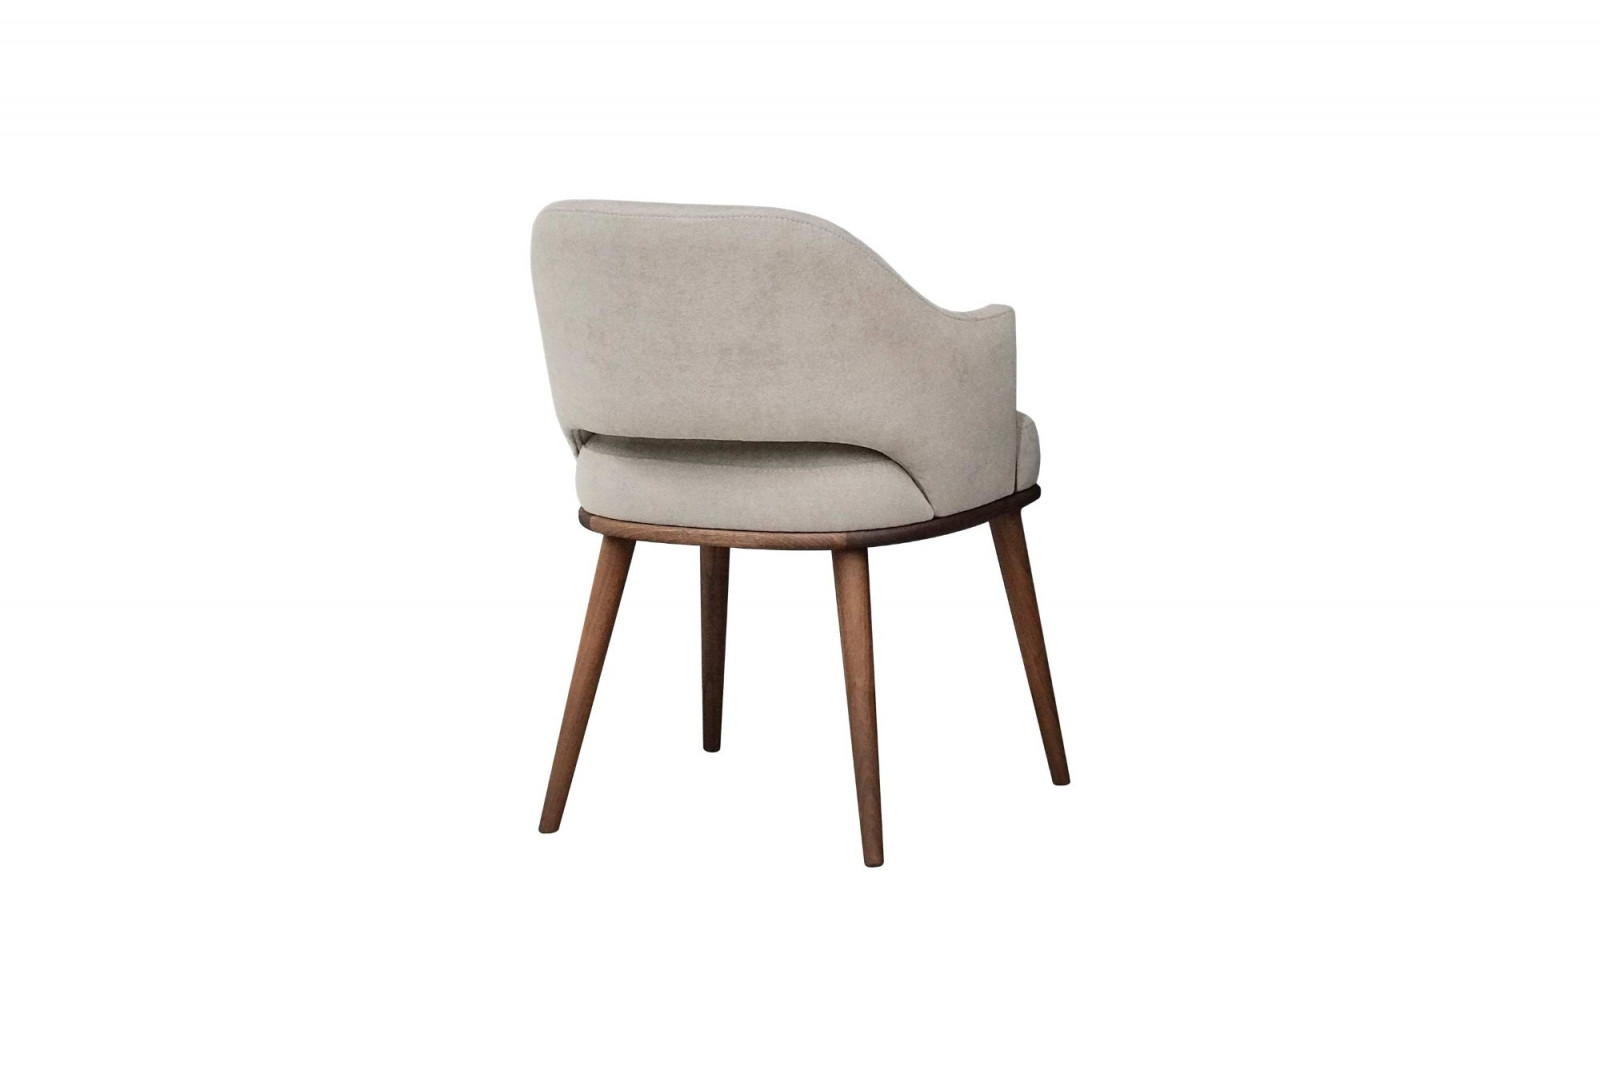 chair_interior_indoor_elegant_modern_wood_juliet_gansk_3-1197-1600-1400-100